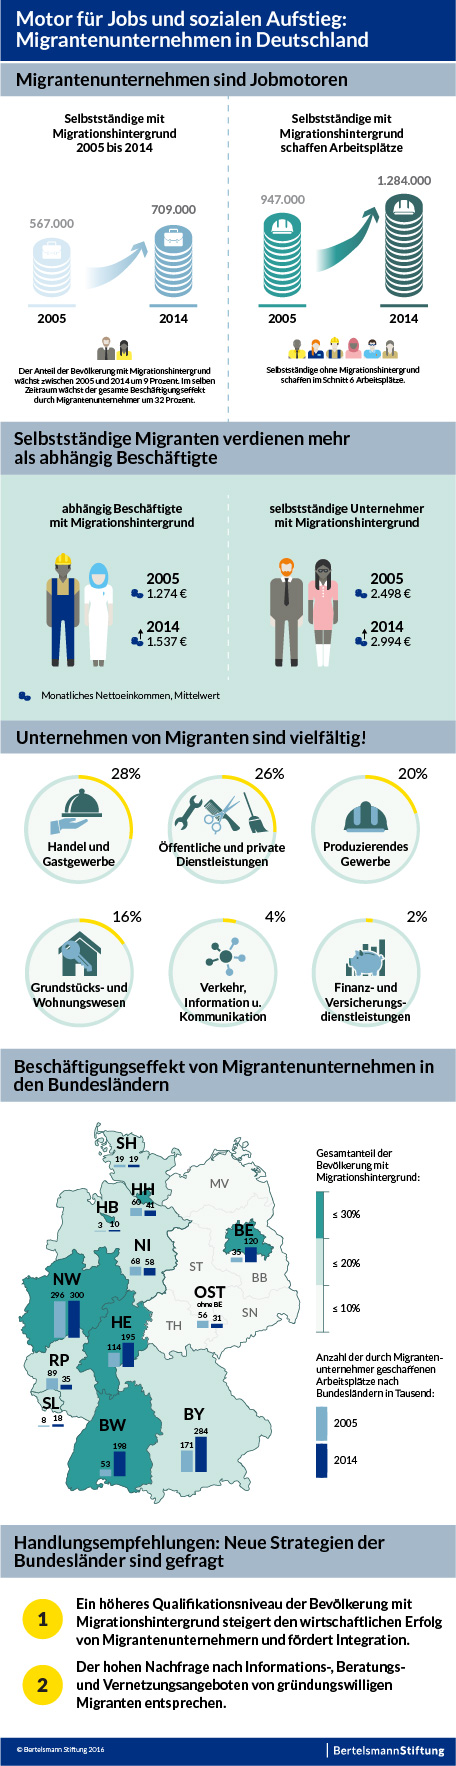 Infografik_Jobmotor-Migrantenunternehmen_20160811